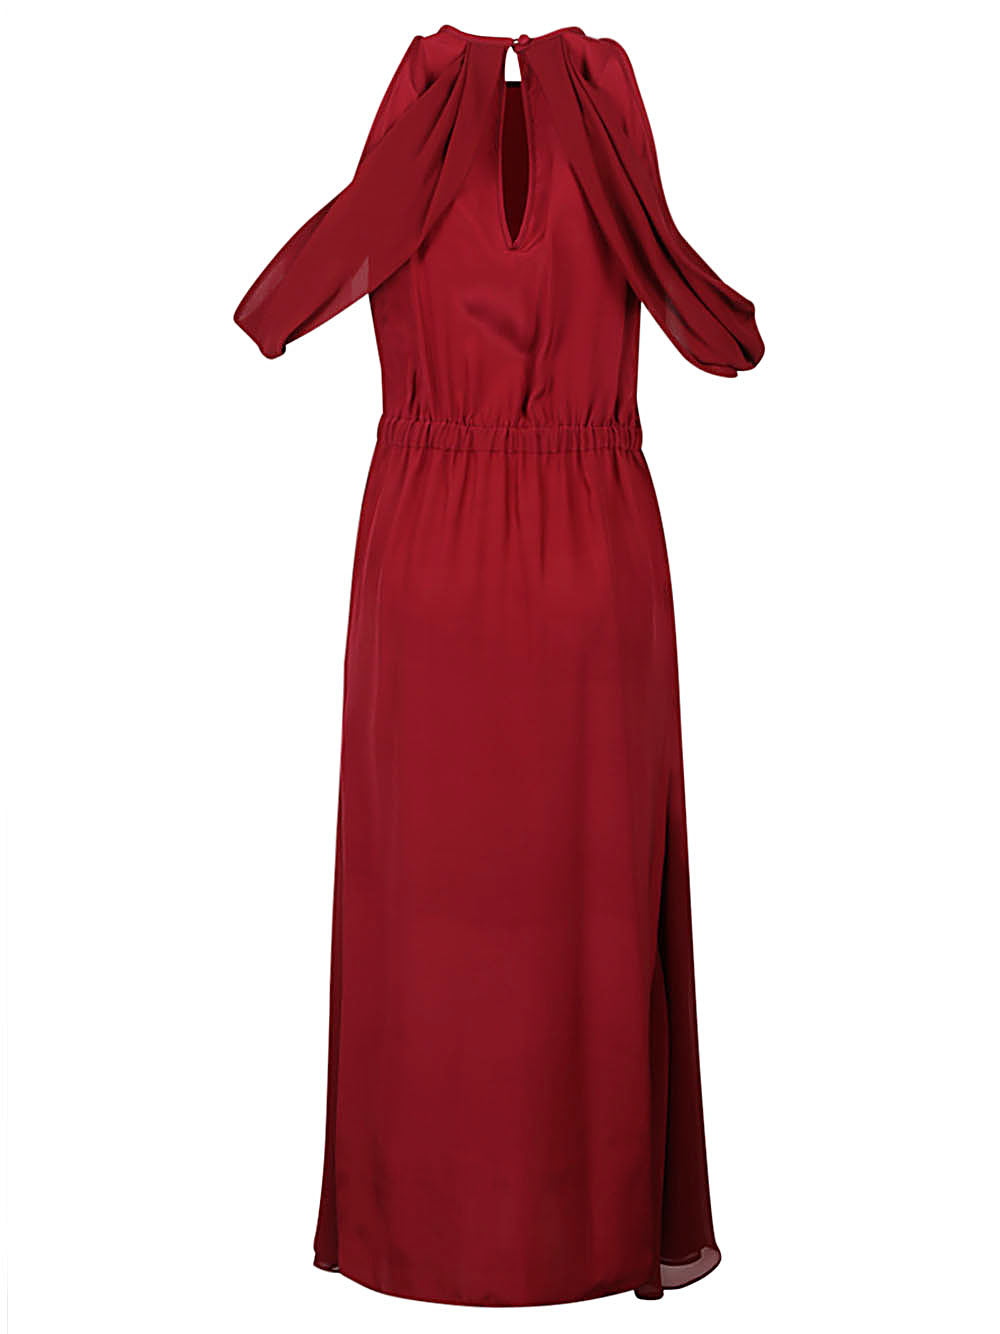 CRIDA Dresses Red